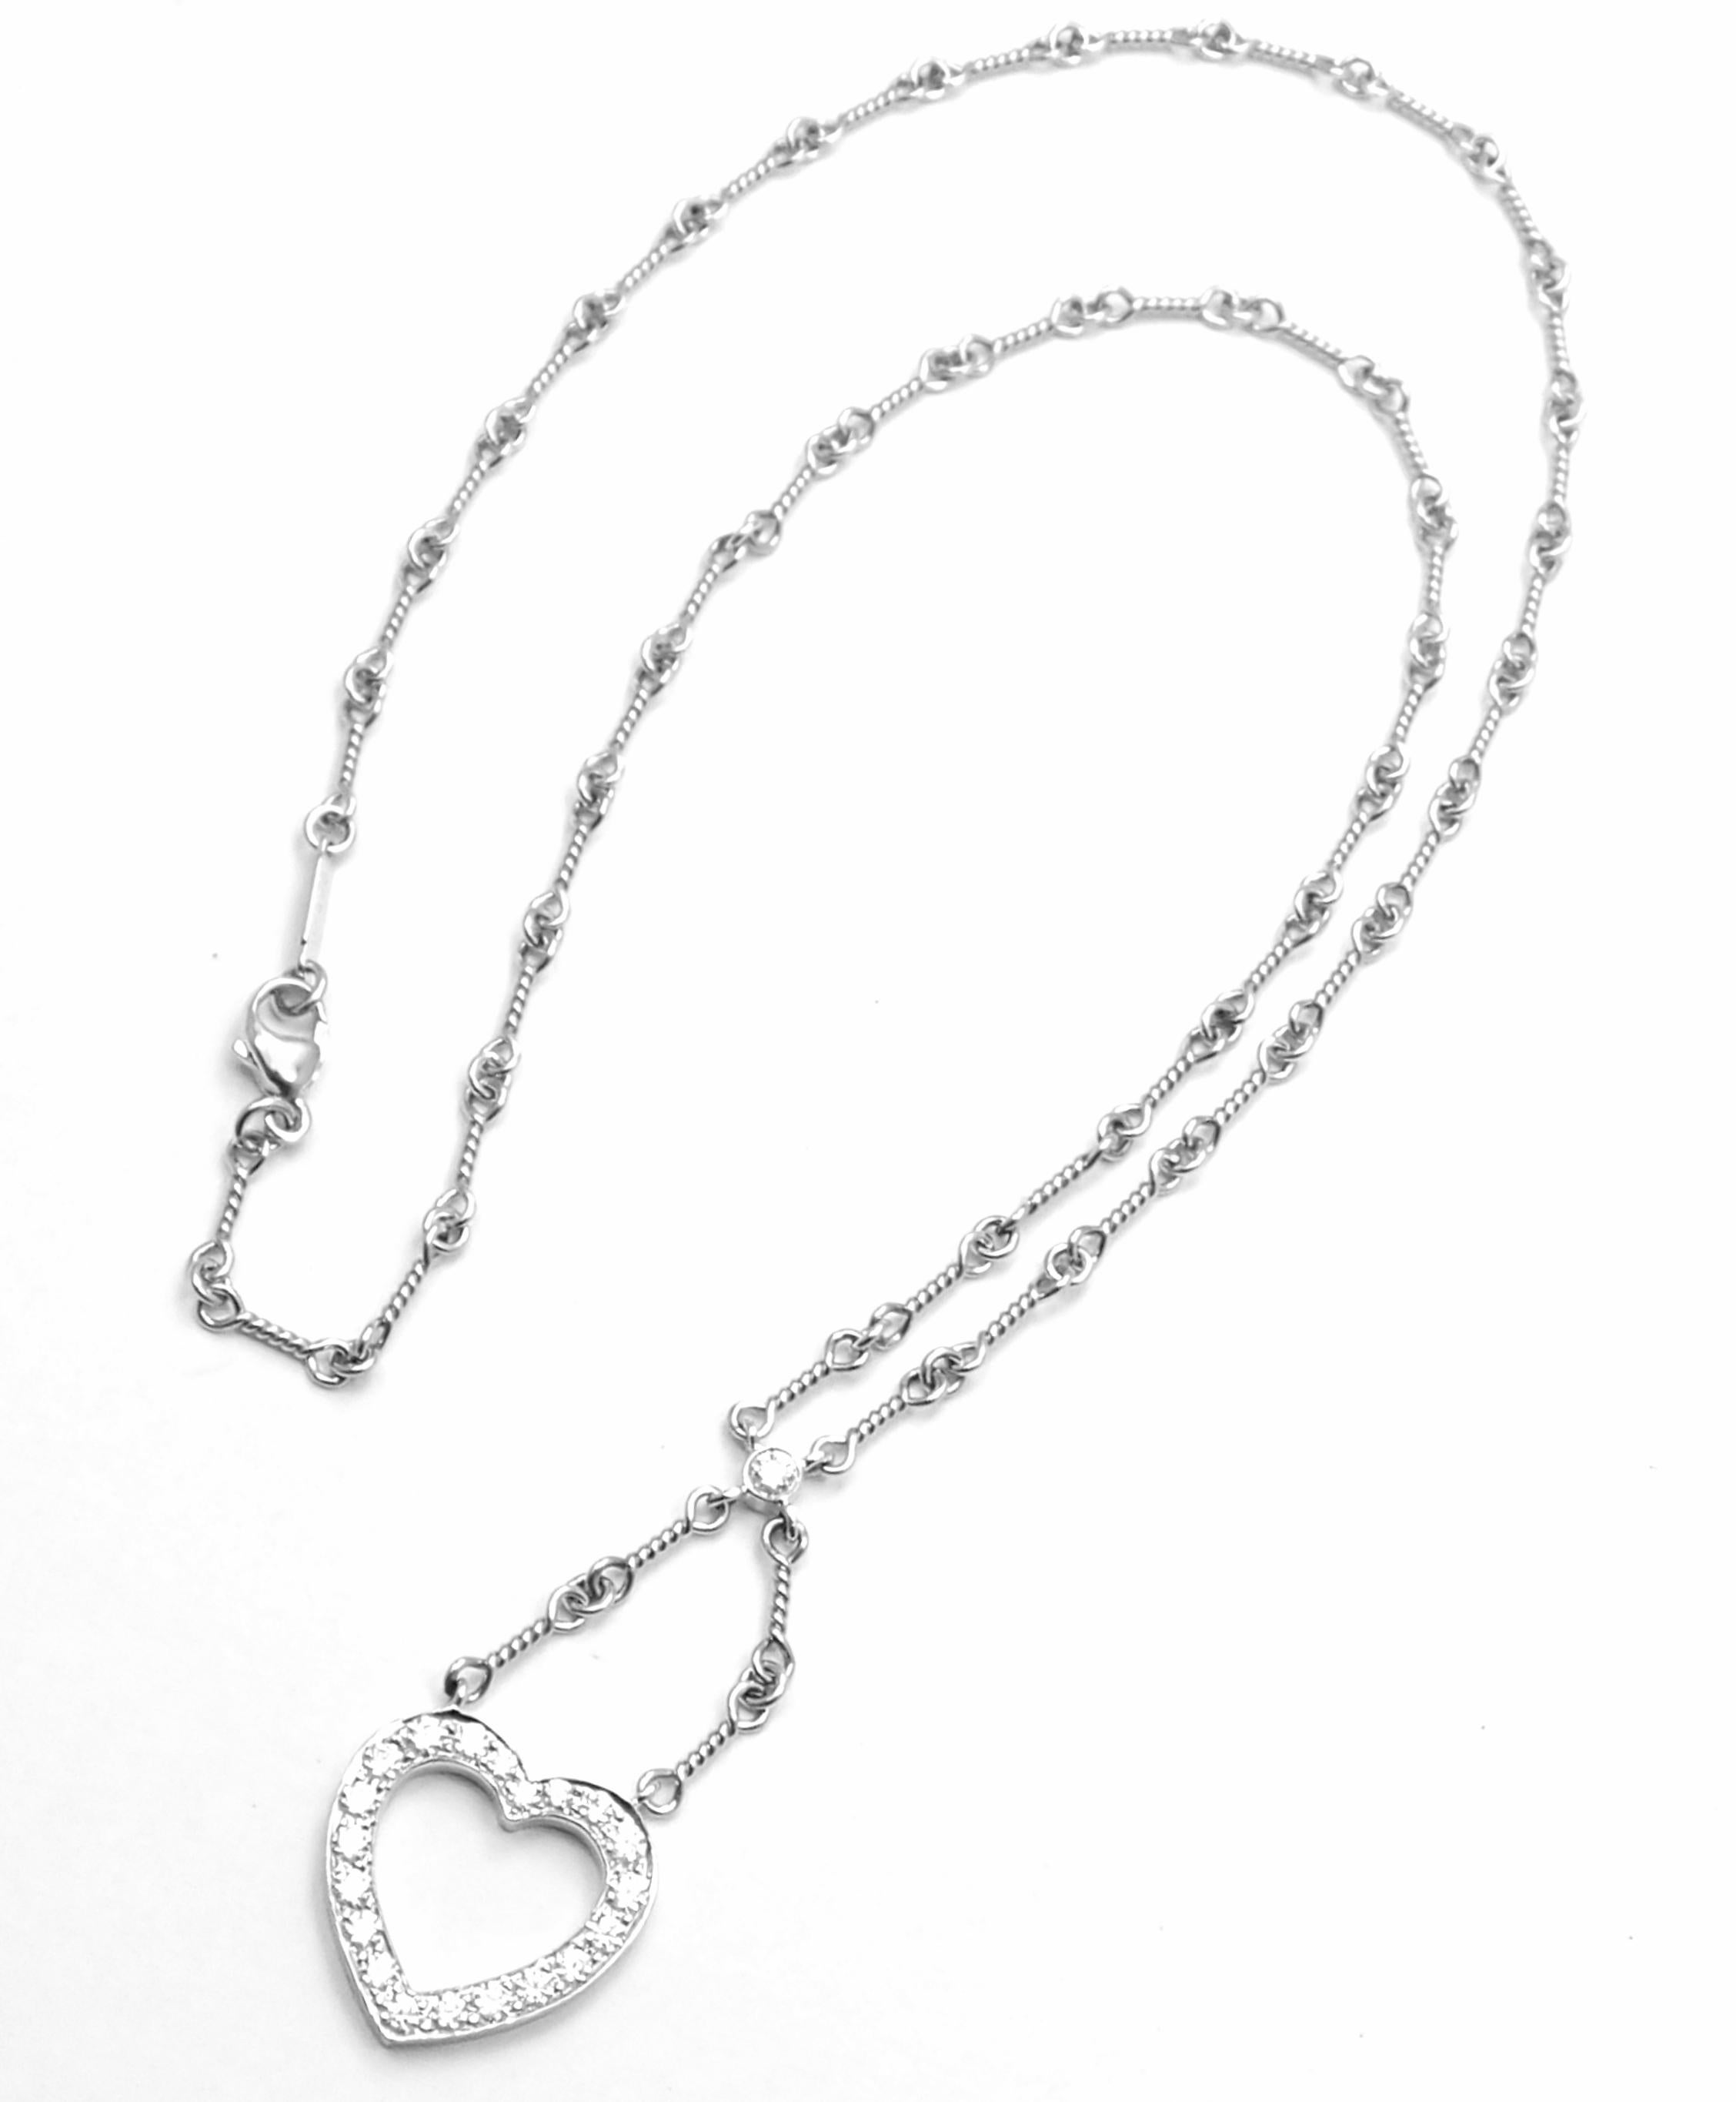 Platin-Diamant-Anhänger-Halskette mit offenem Herz von Tiffany & Co.
Mit runden Diamanten im Brillantschliff, Reinheit VS1, Farbe G, Gesamtgewicht ca. 0,67ct
Einzelheiten:
Länge der Kette: 16.5